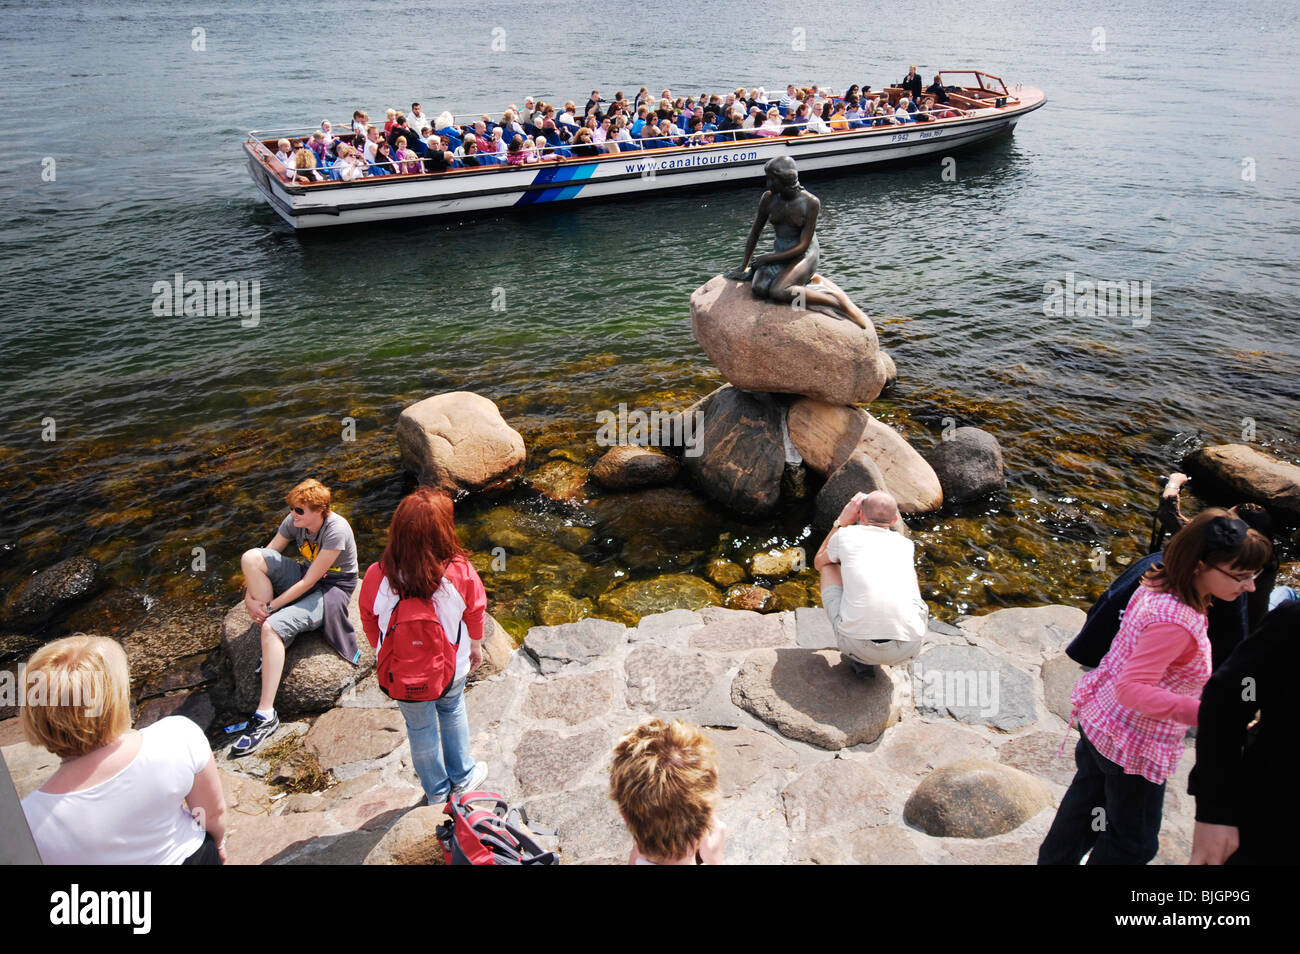 Rassemblement de touristes autour de Copenhague, sur l'attraction touristique de premier choix : la sculpture de bronze Den lille havfrue, La Petite Sirène. Banque D'Images